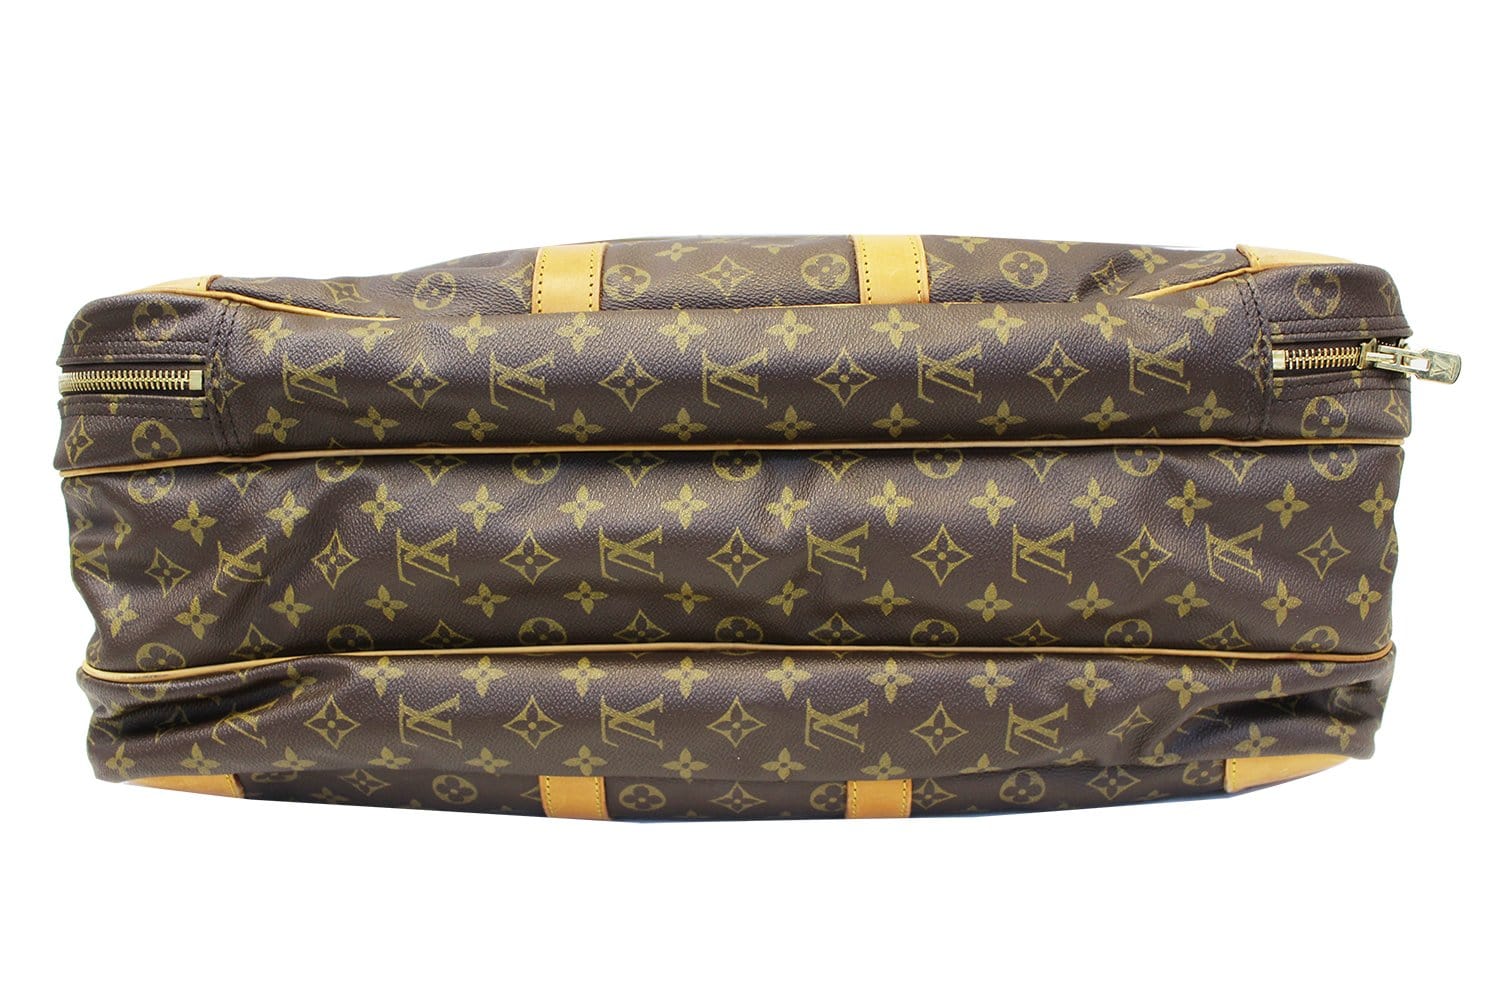 Rare Vintage Louis Vuitton Large Double Travel Bag